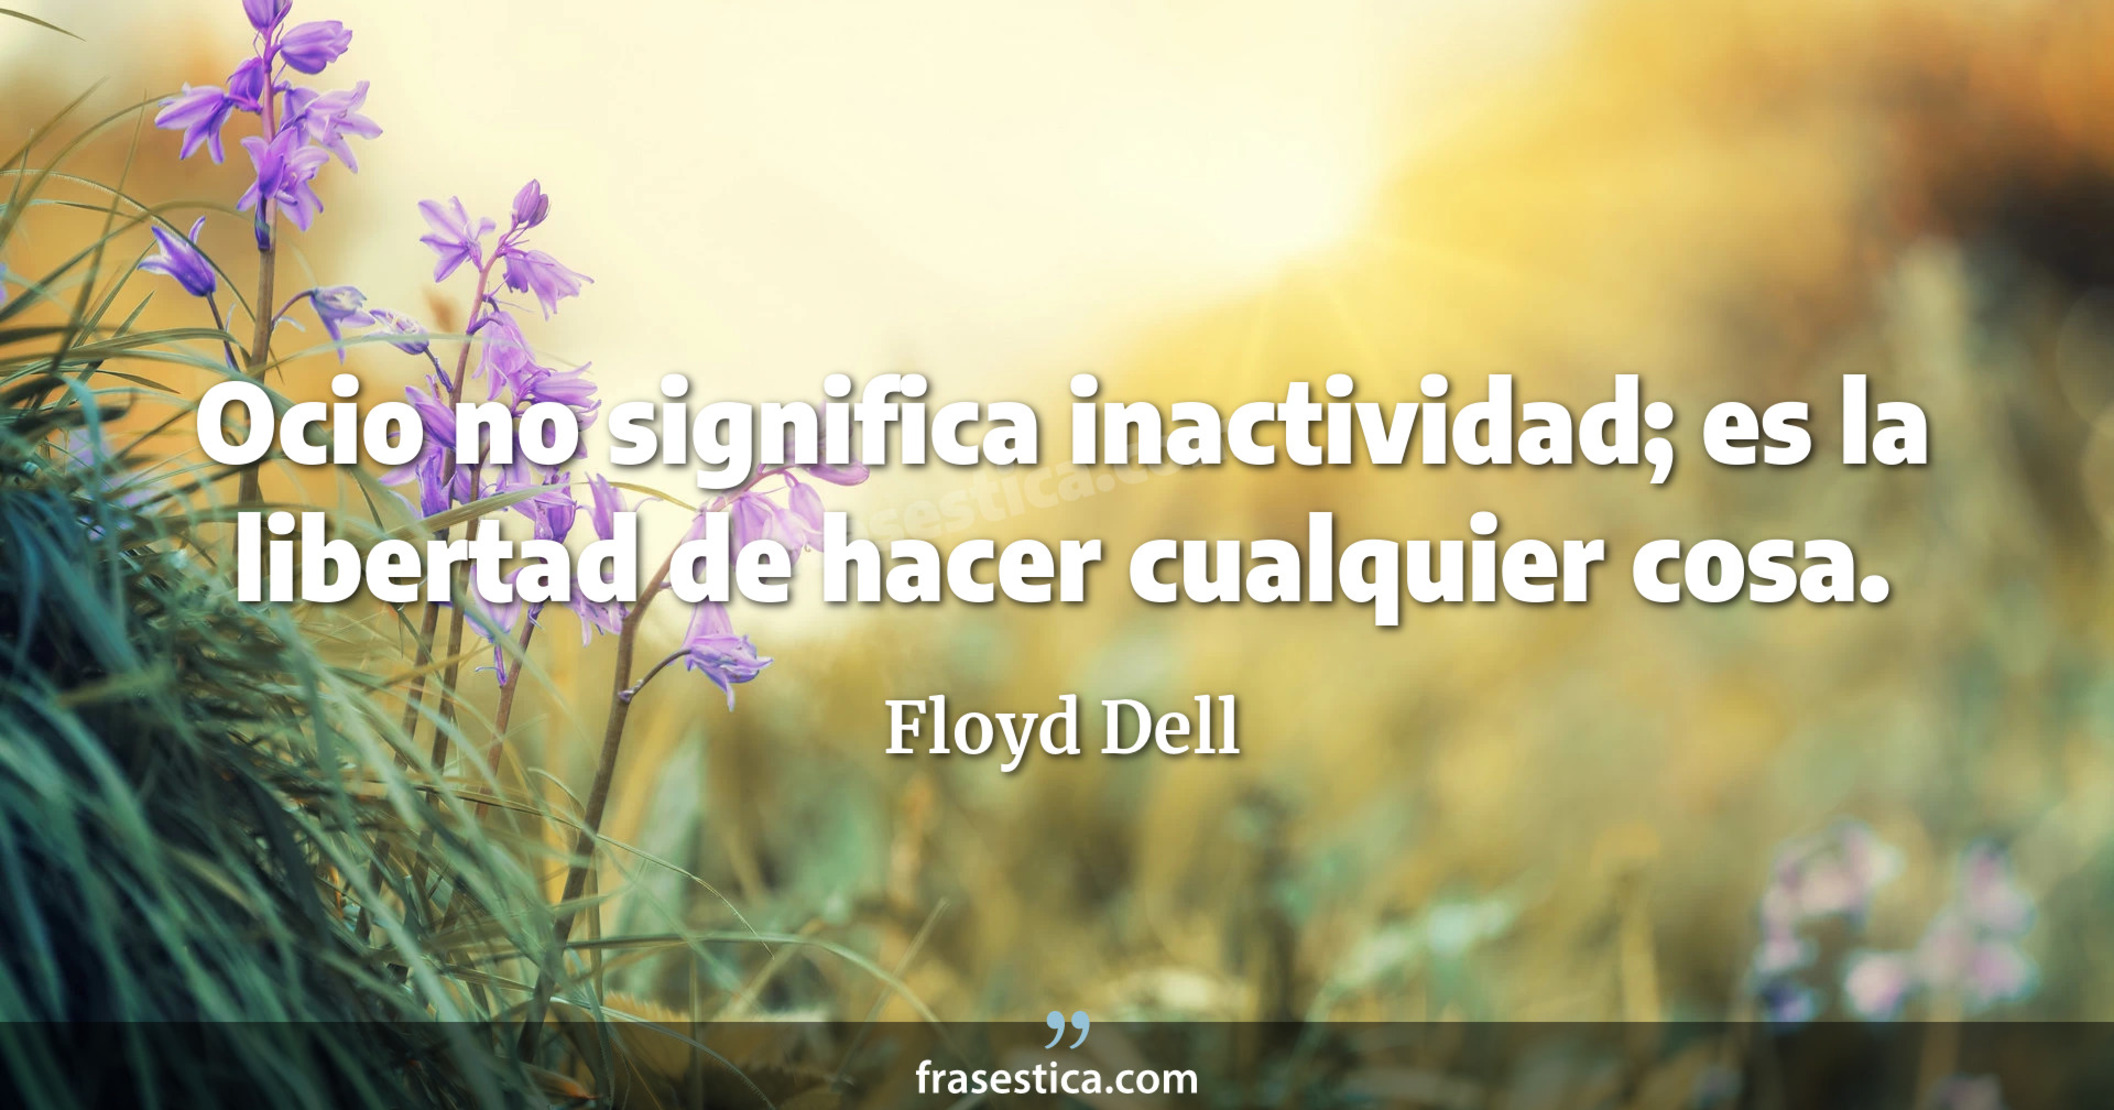 Ocio no significa inactividad; es la libertad de hacer cualquier cosa. - Floyd Dell